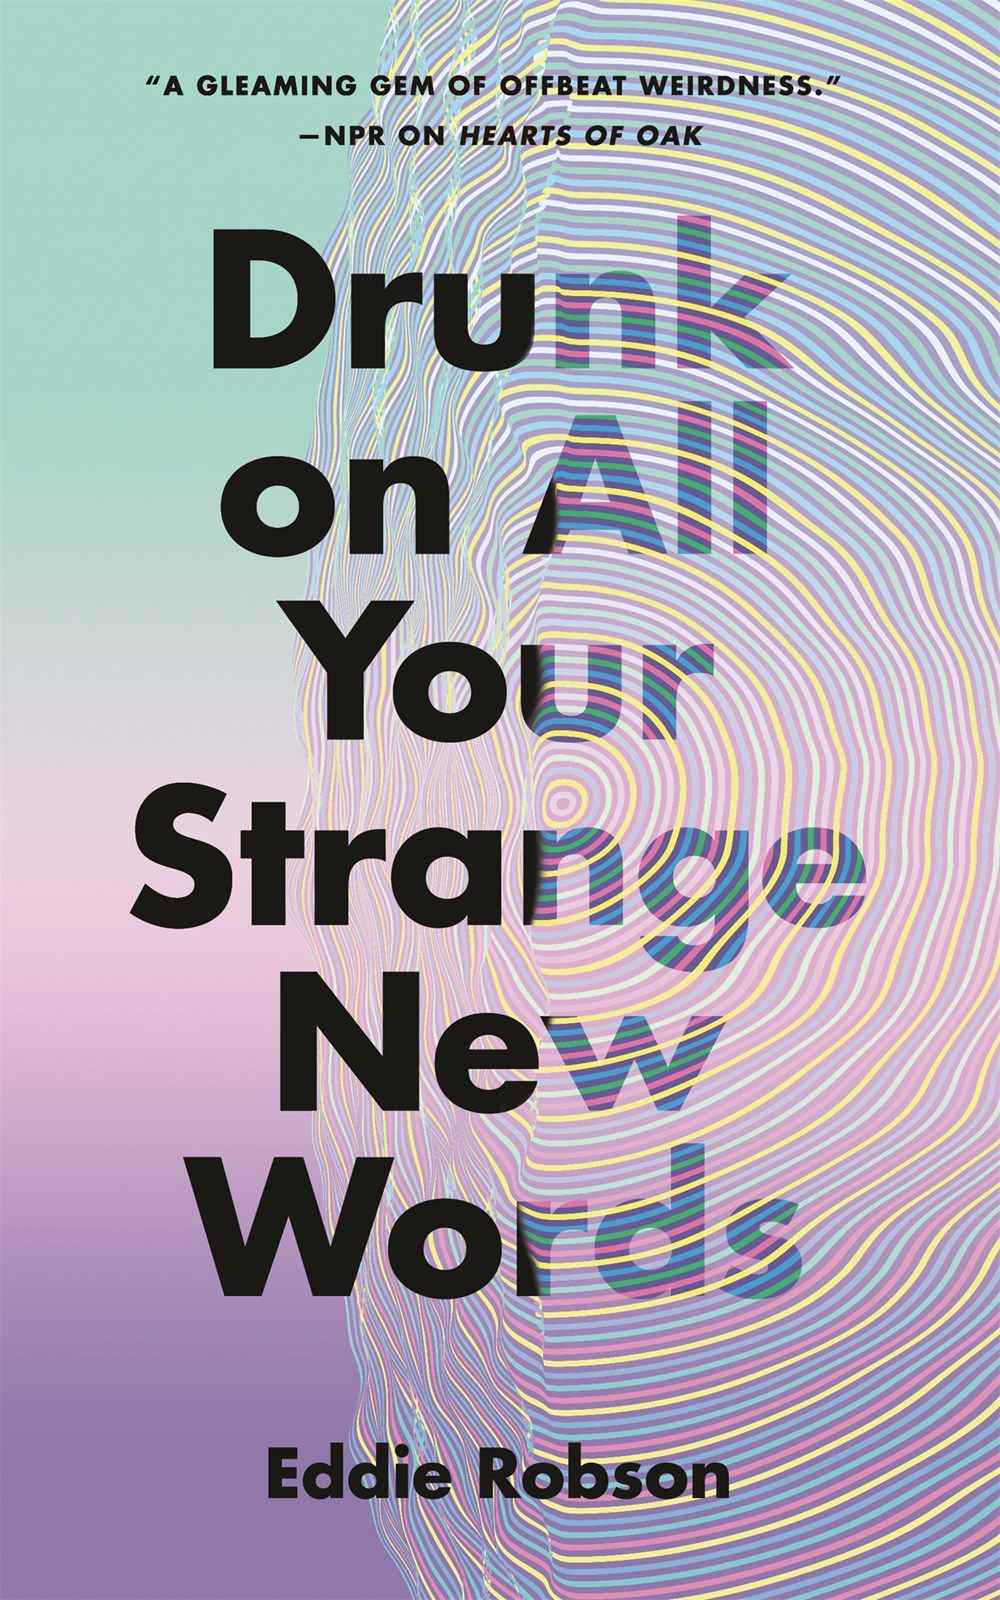 Couverture de Drunk on All Your Strange New Worlds d'Eddie Robson, avec un texte sombre sur un fond pastel partiellement obscurci par un effet d'entraînement.